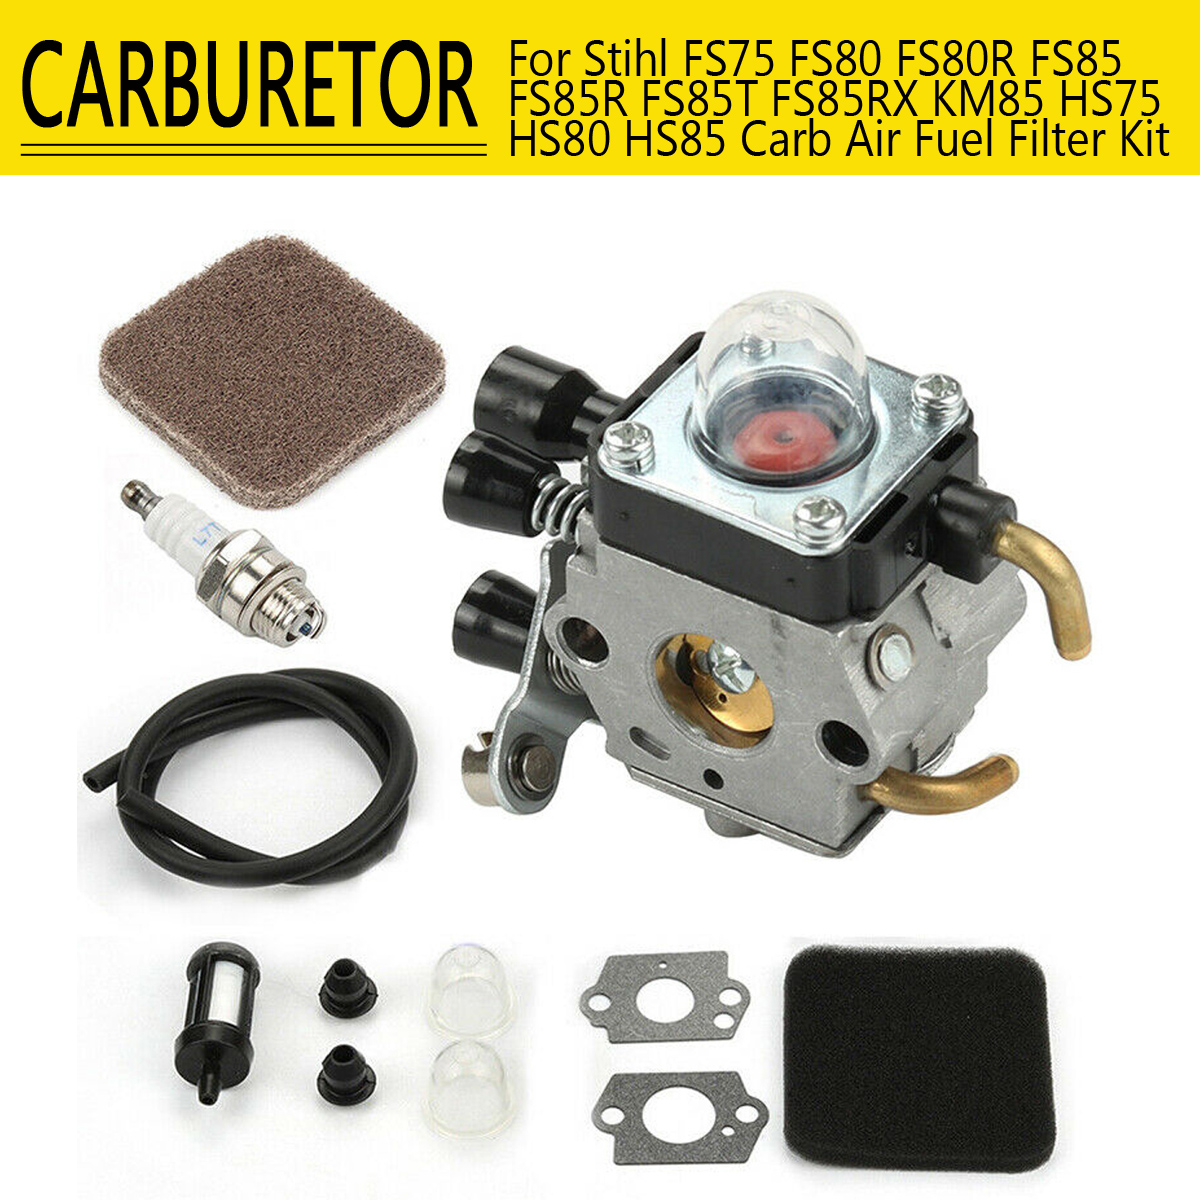 Carburetor For Stihl FS85 FS75 FS80 KM85 HS80 HS85 Carb Air Fuel Filter Kit 